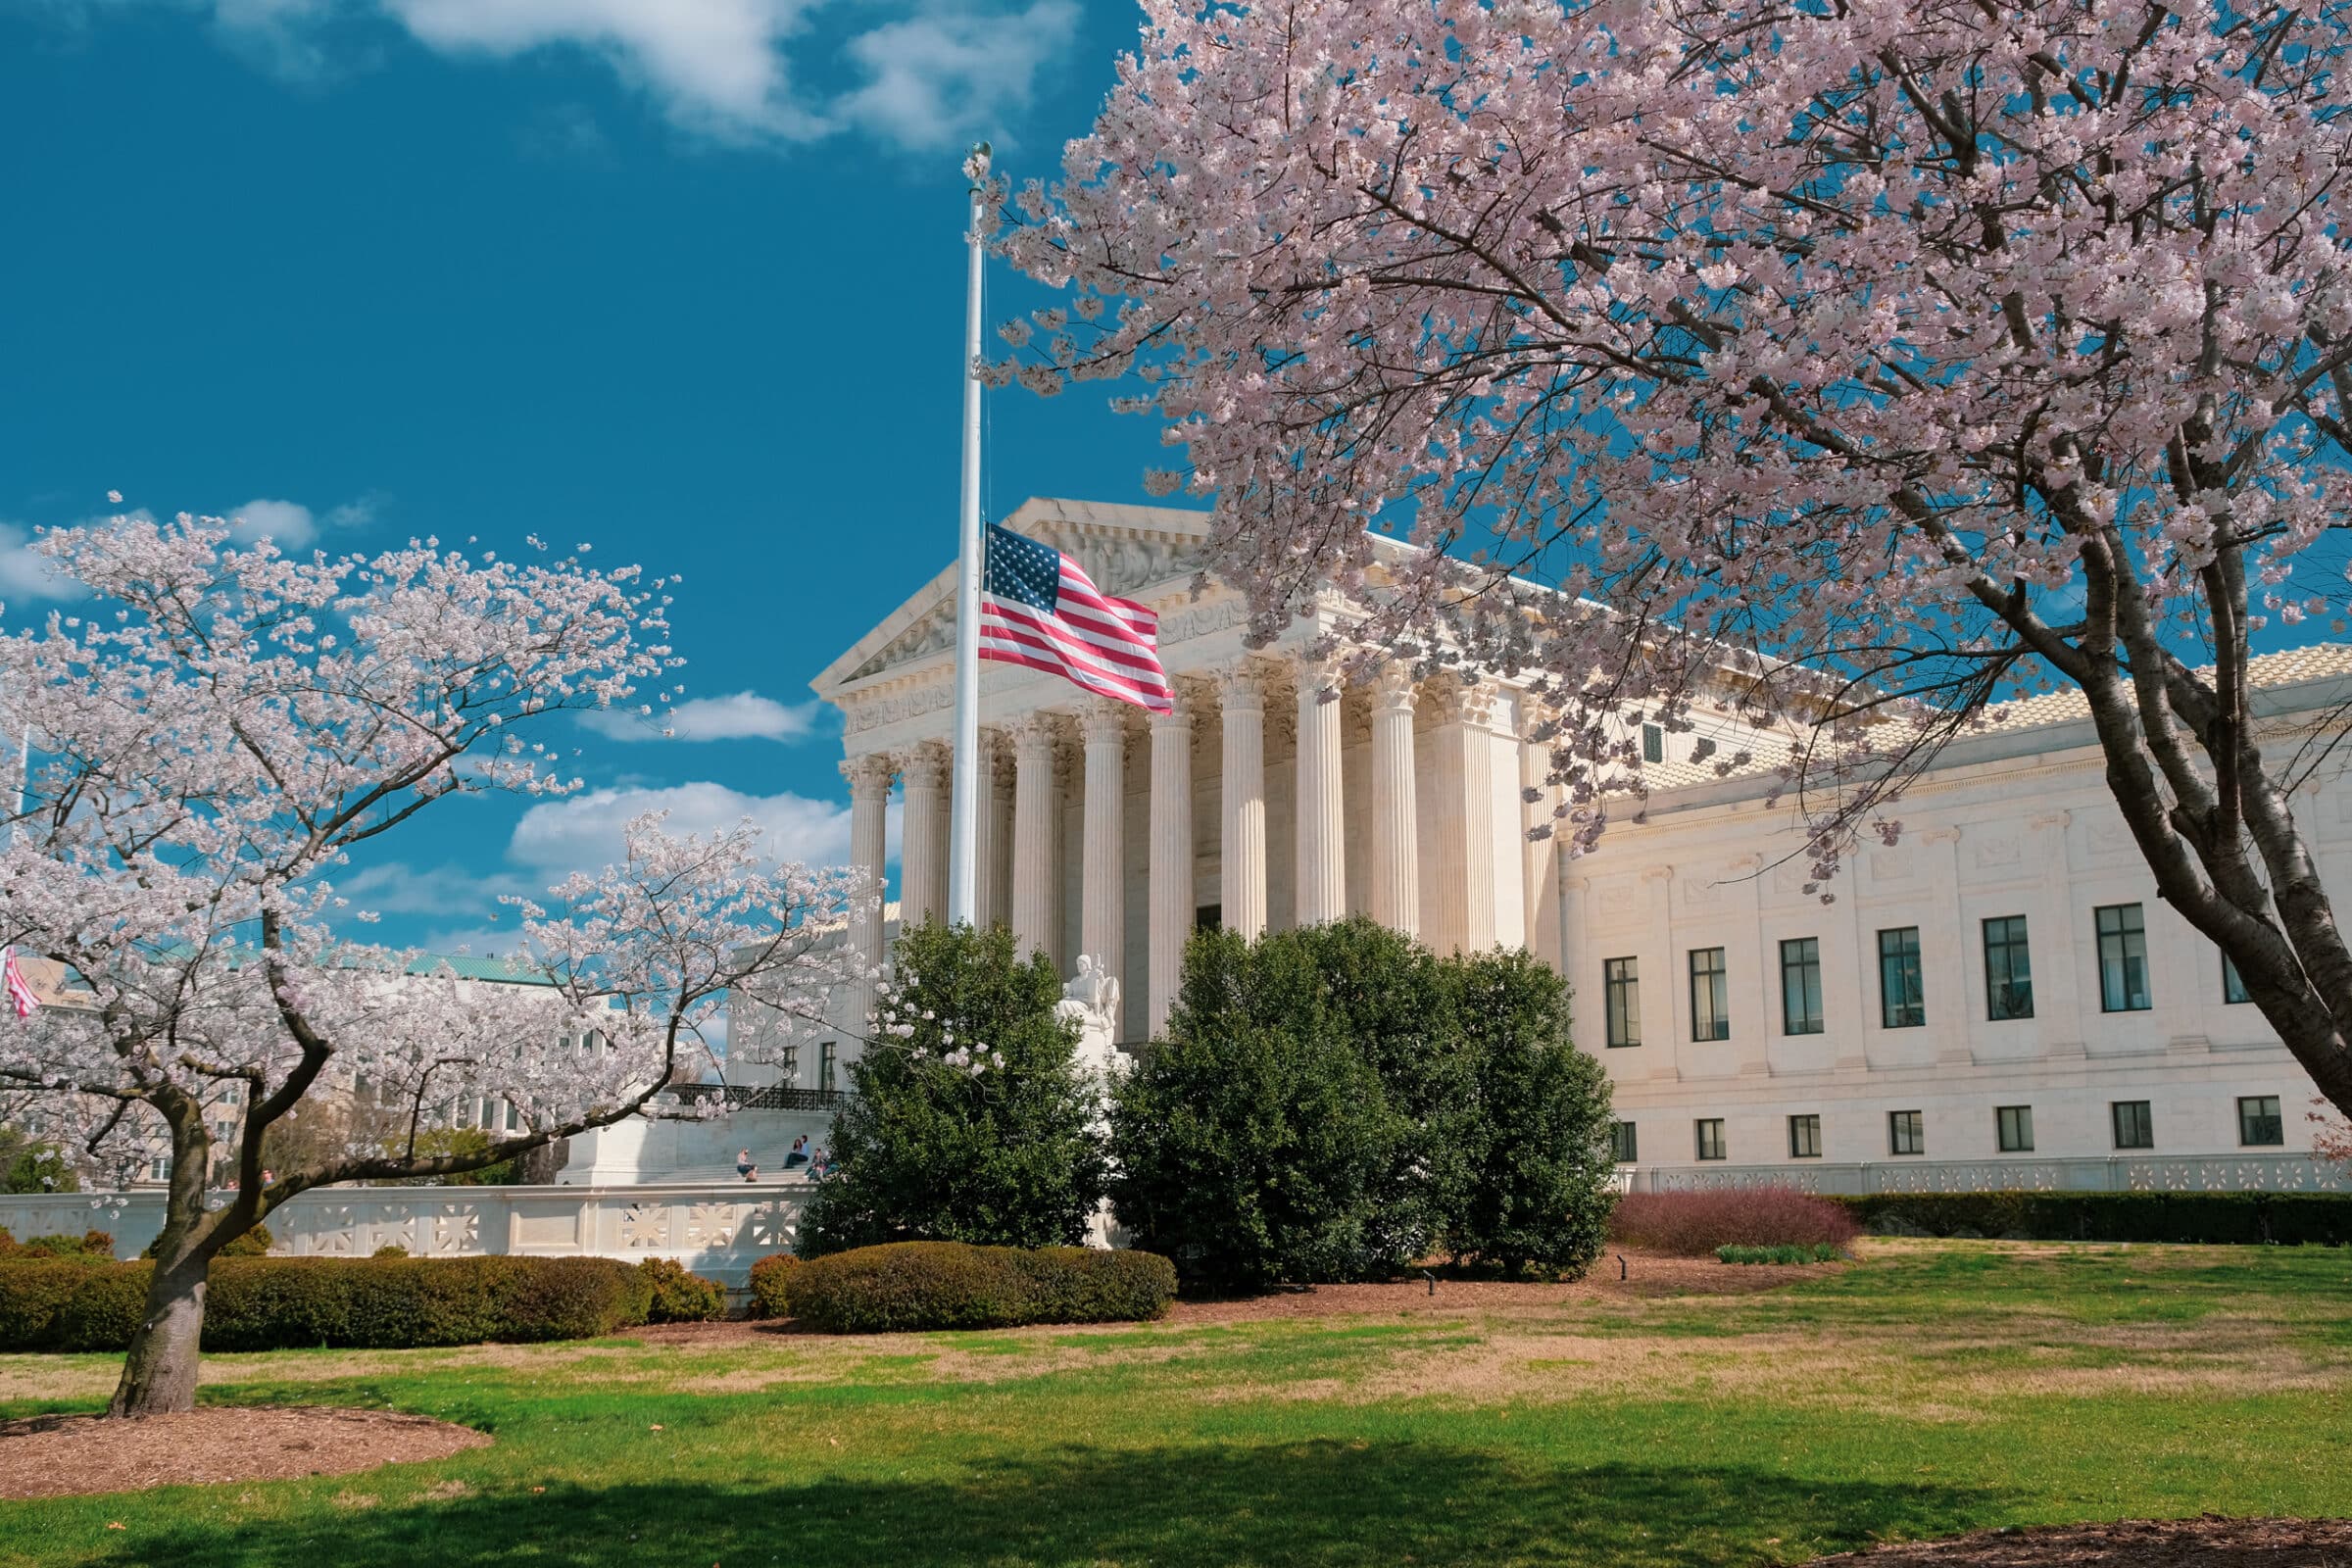 Het hooggerechtshof in Washington D.C. met Japanse bloesem | Hoogtepunten oostkust VS: roadtrip New York - Key West